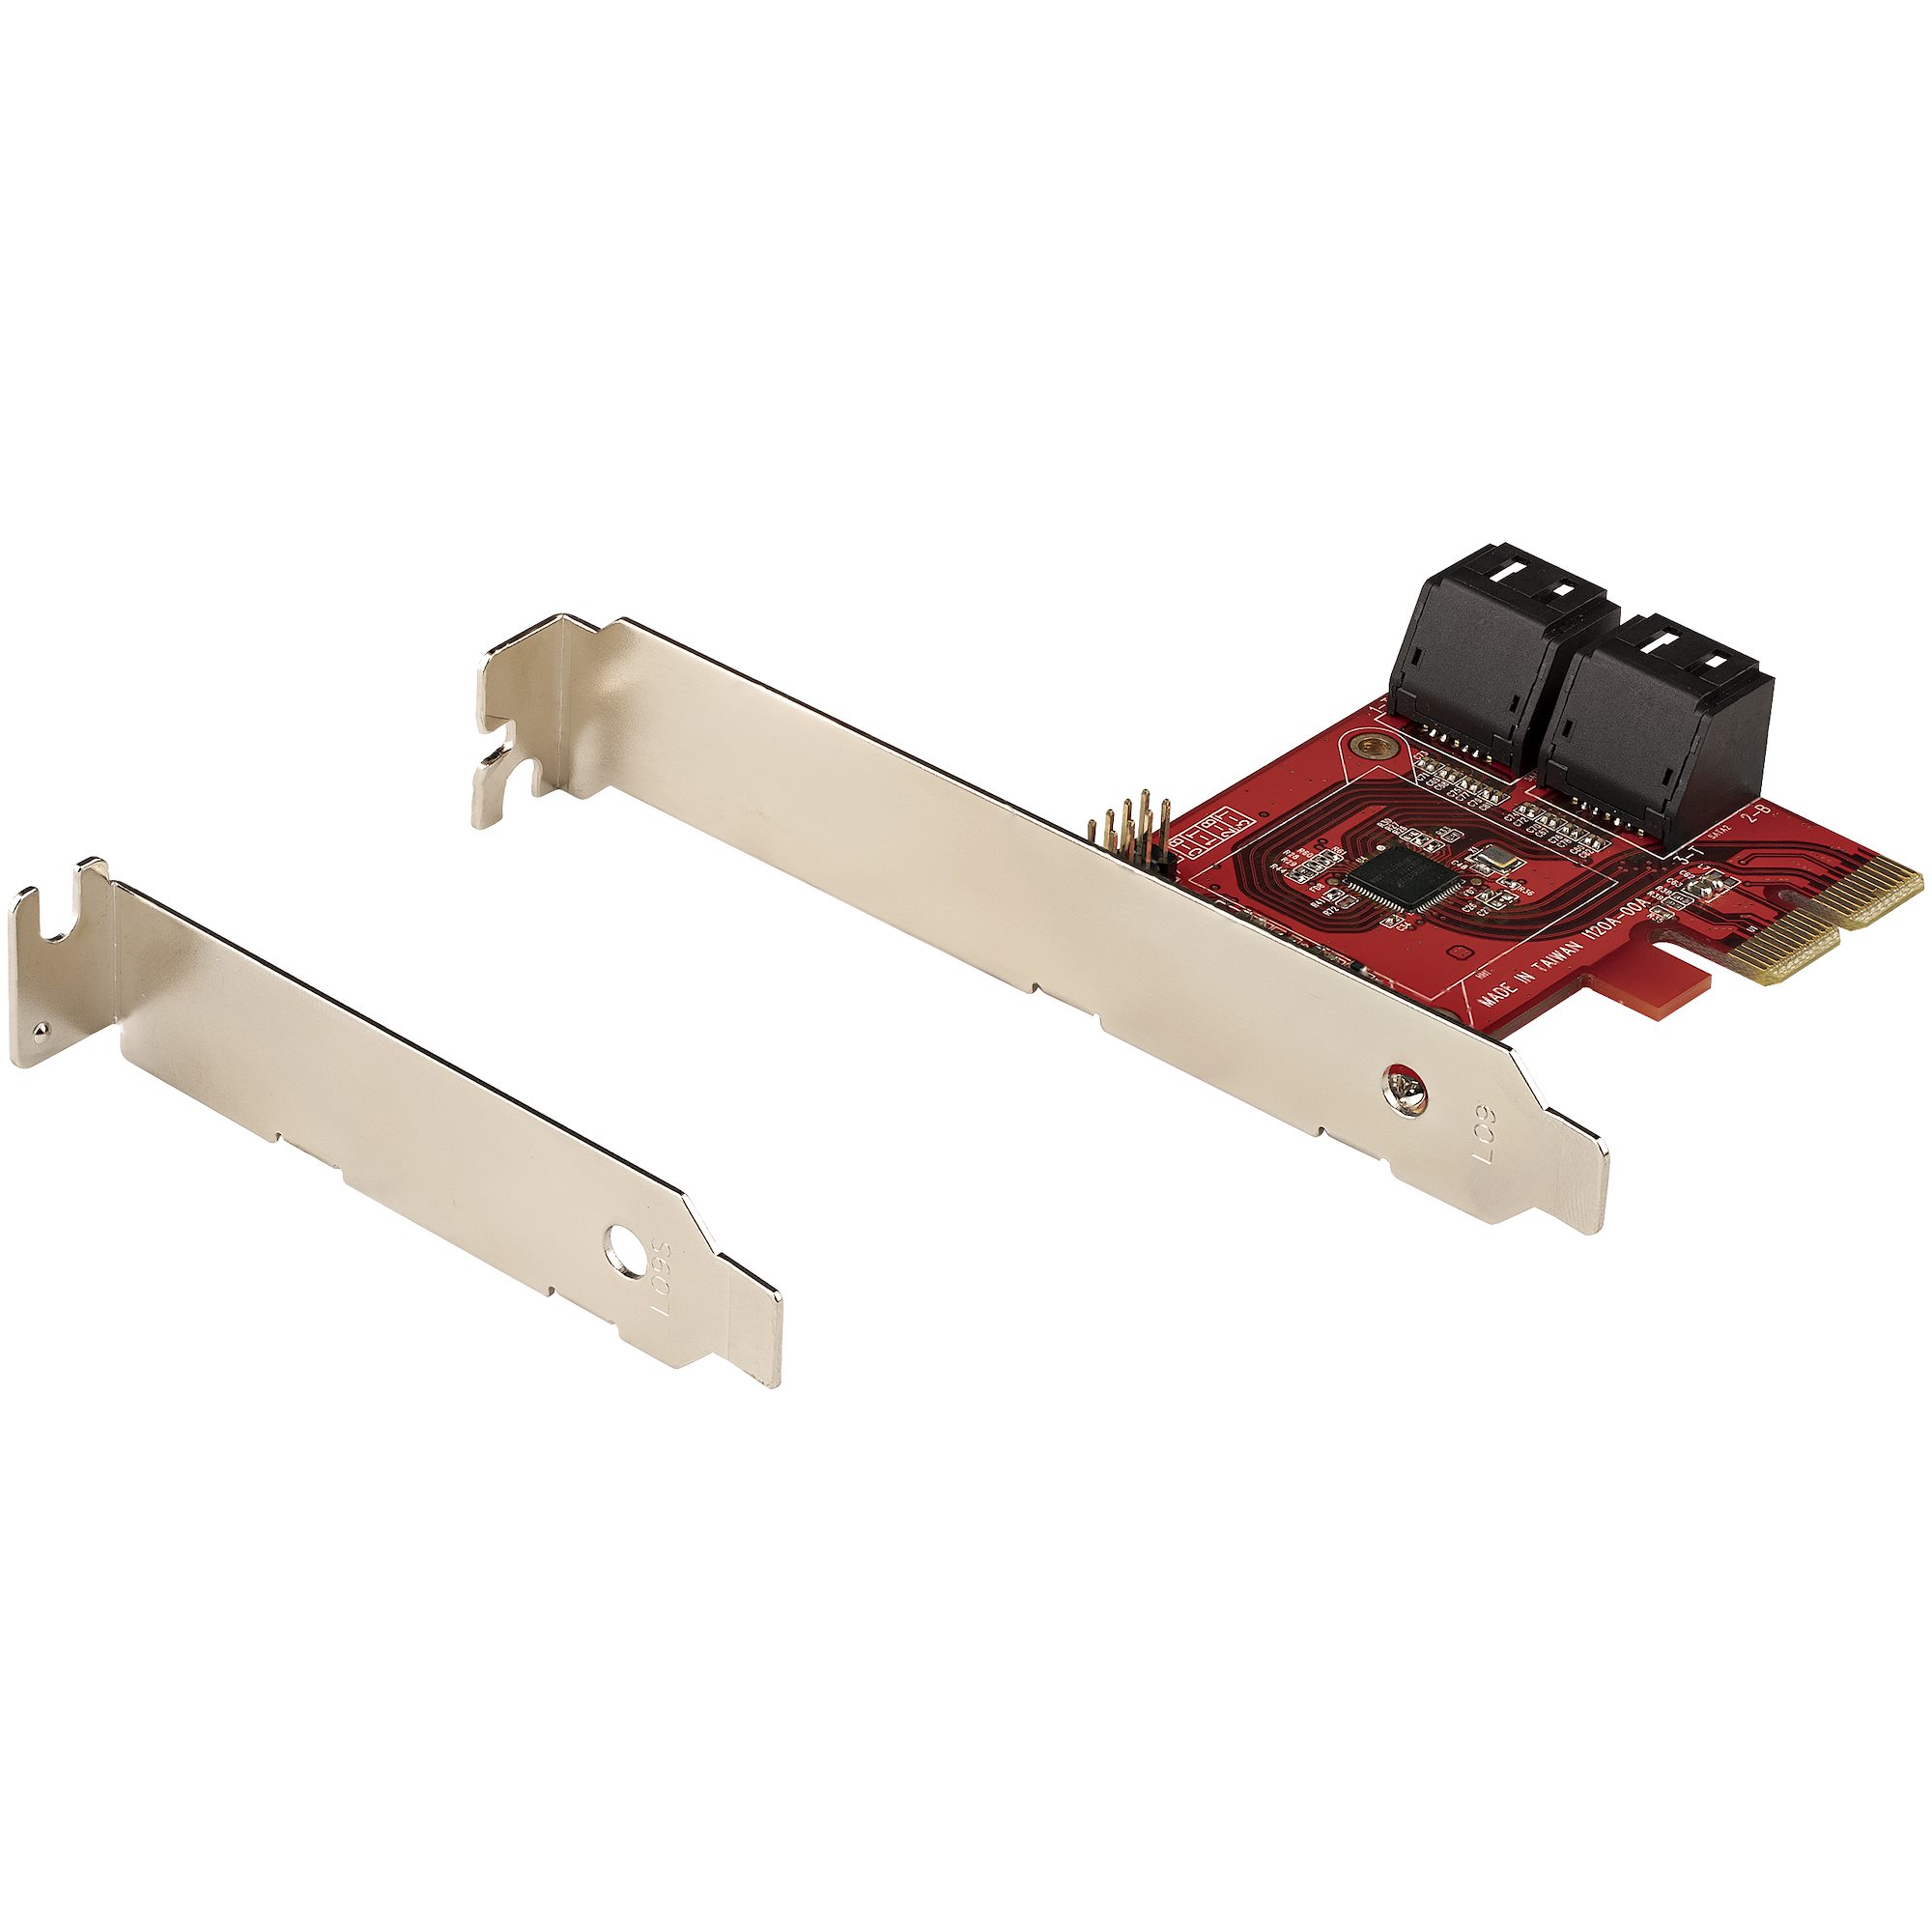 SATA PCIe Card, 4 Ports, 6Gbps, Non-RAID - SATA Cards | Cards & Peripherals |